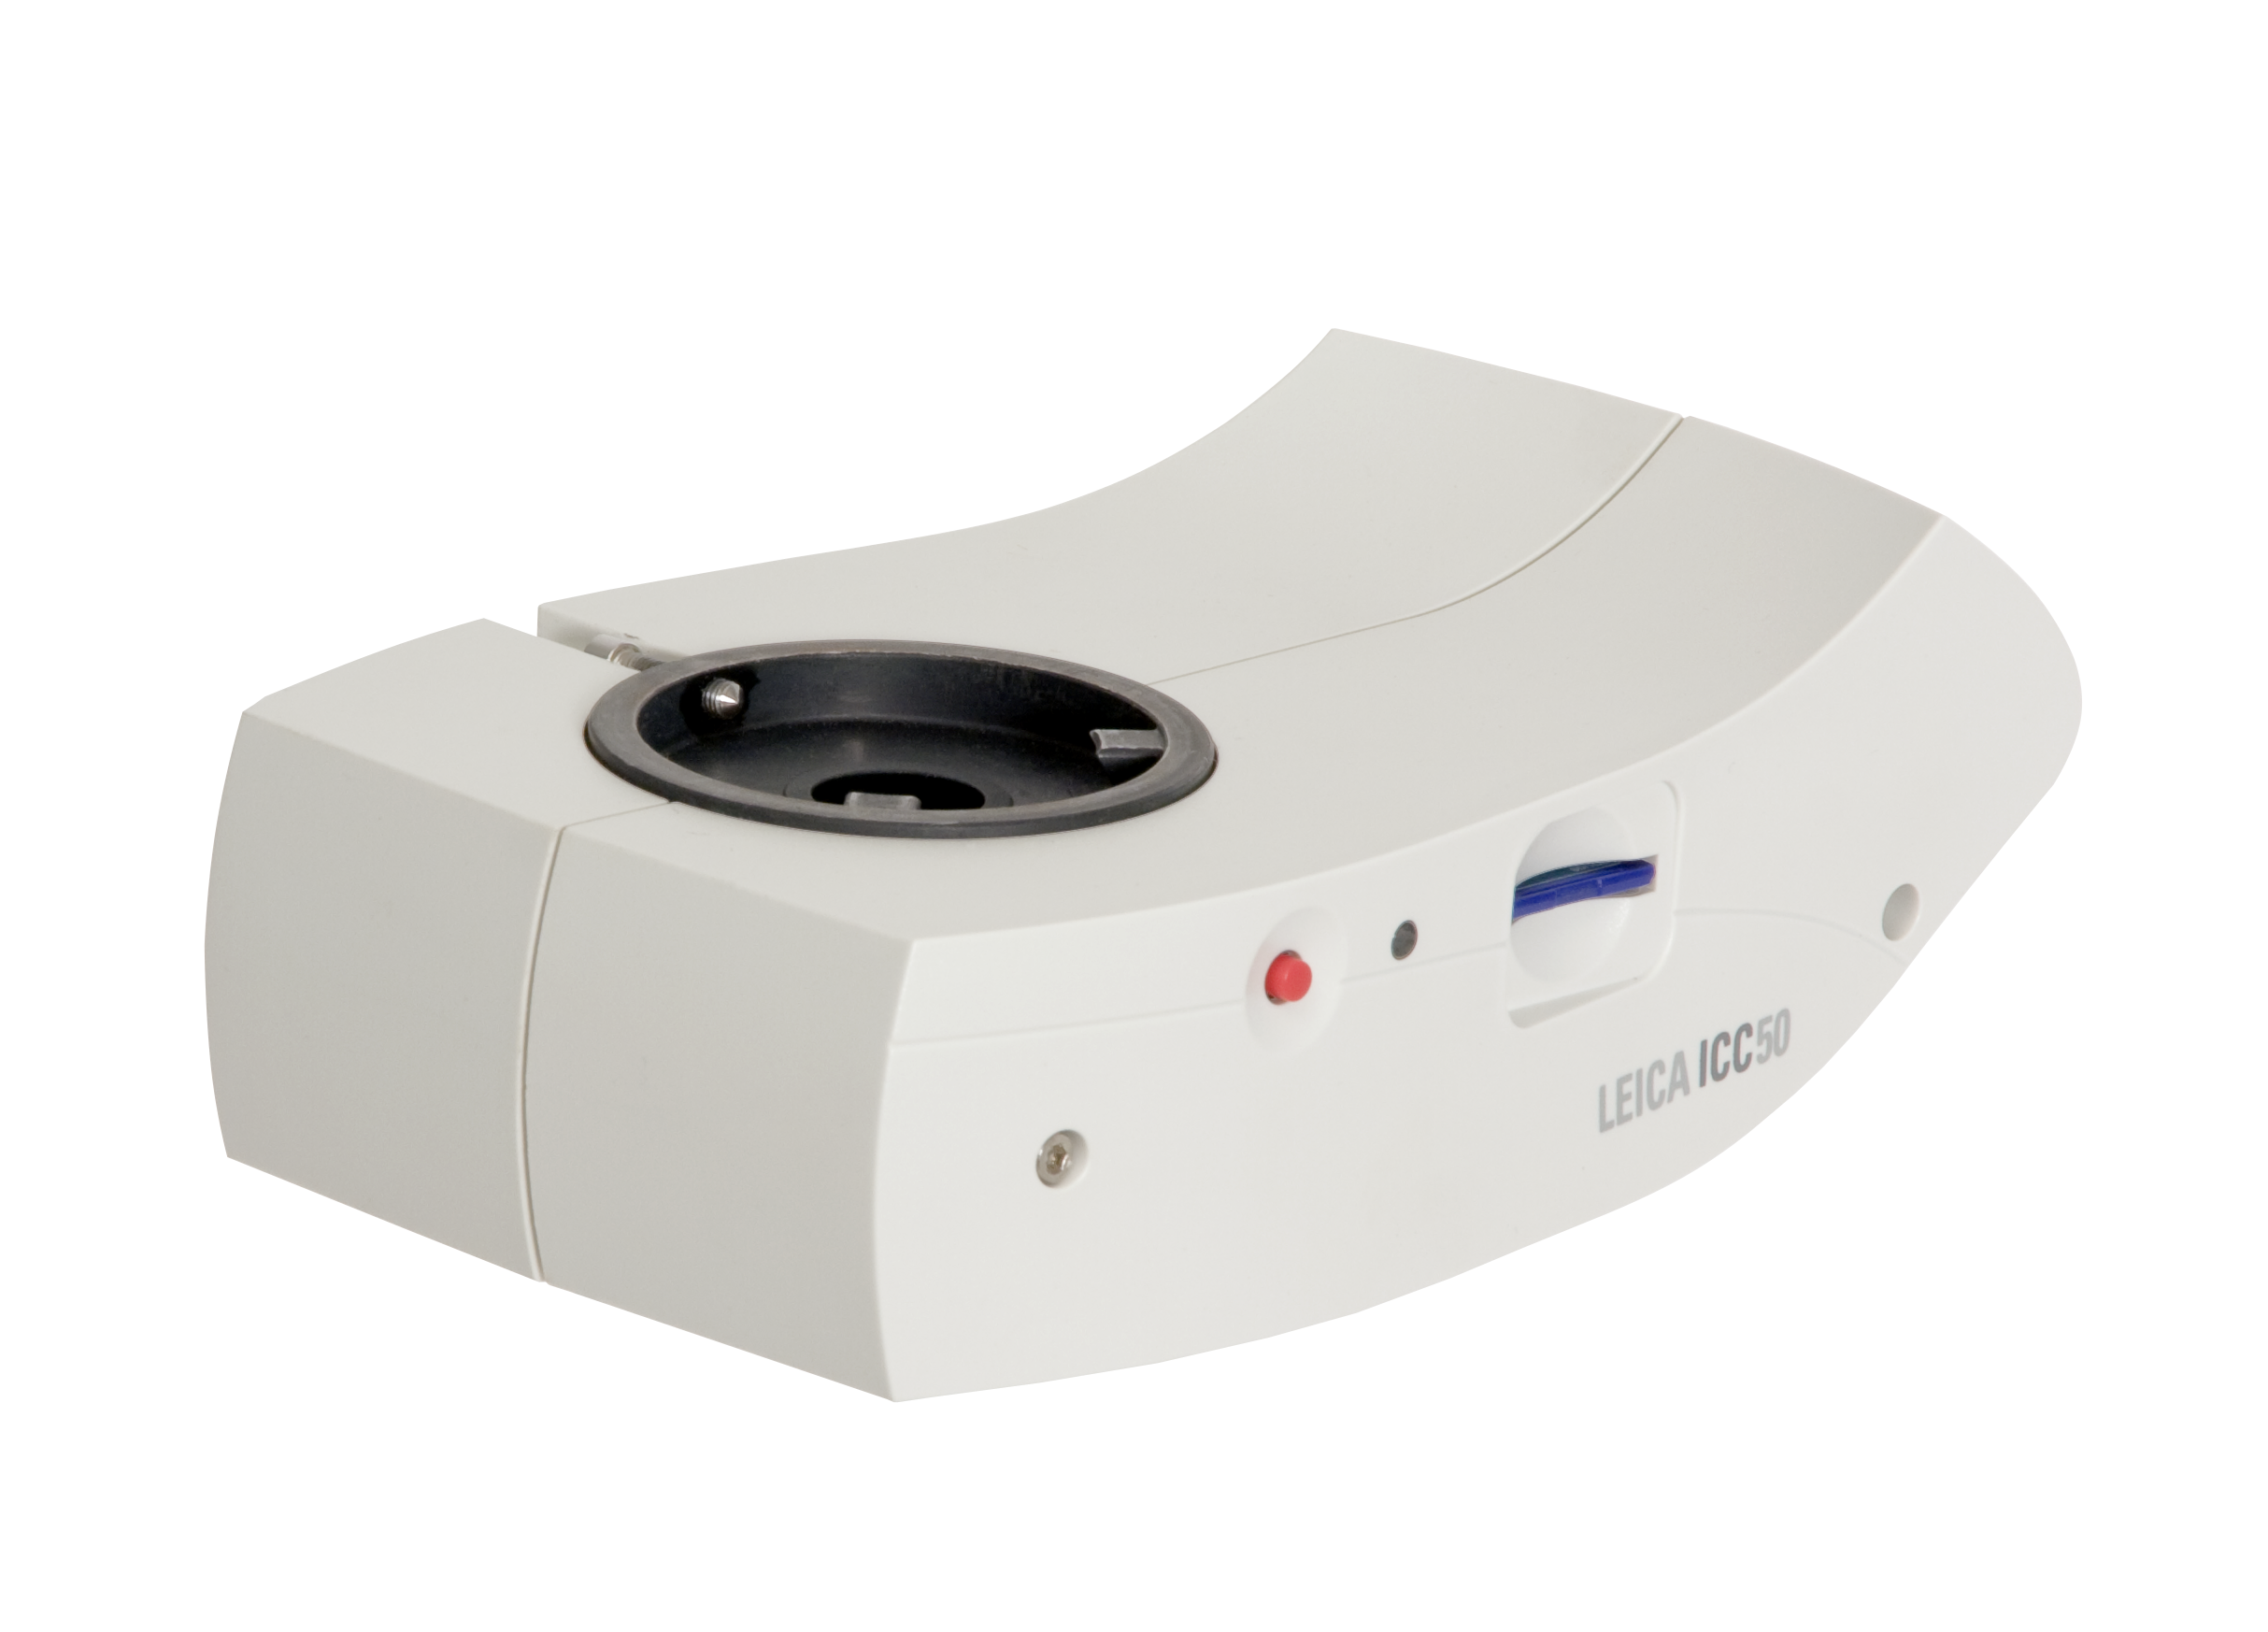 Leica ICC50 permettant de partager, de capturer et d'archiver des images grâce à une caméra intégrée.